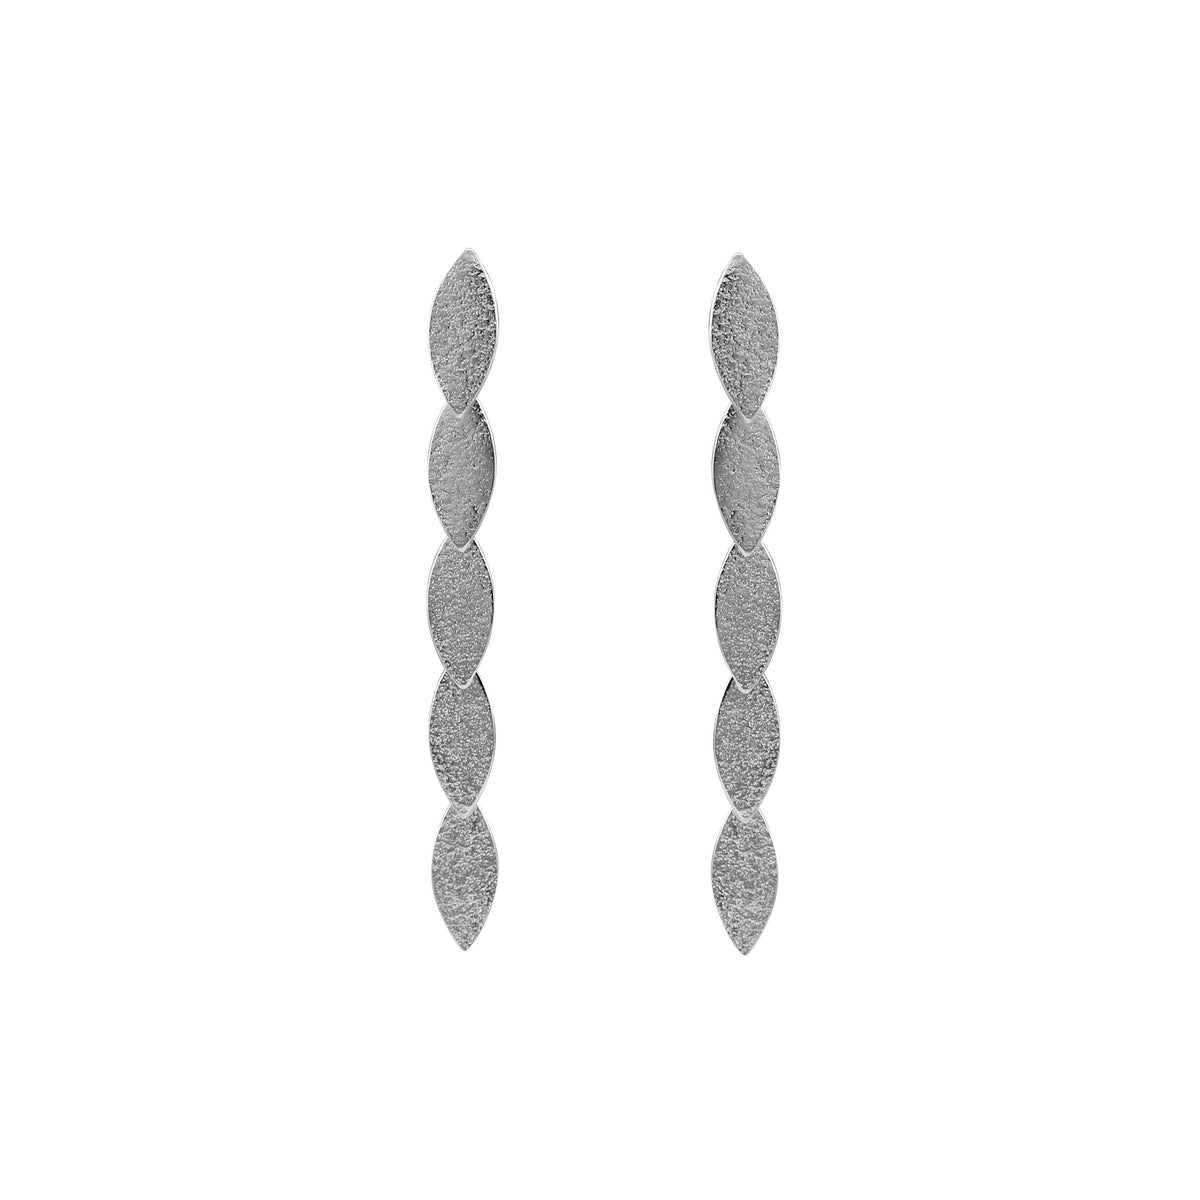 silver drop earrings by Cara Tonkin